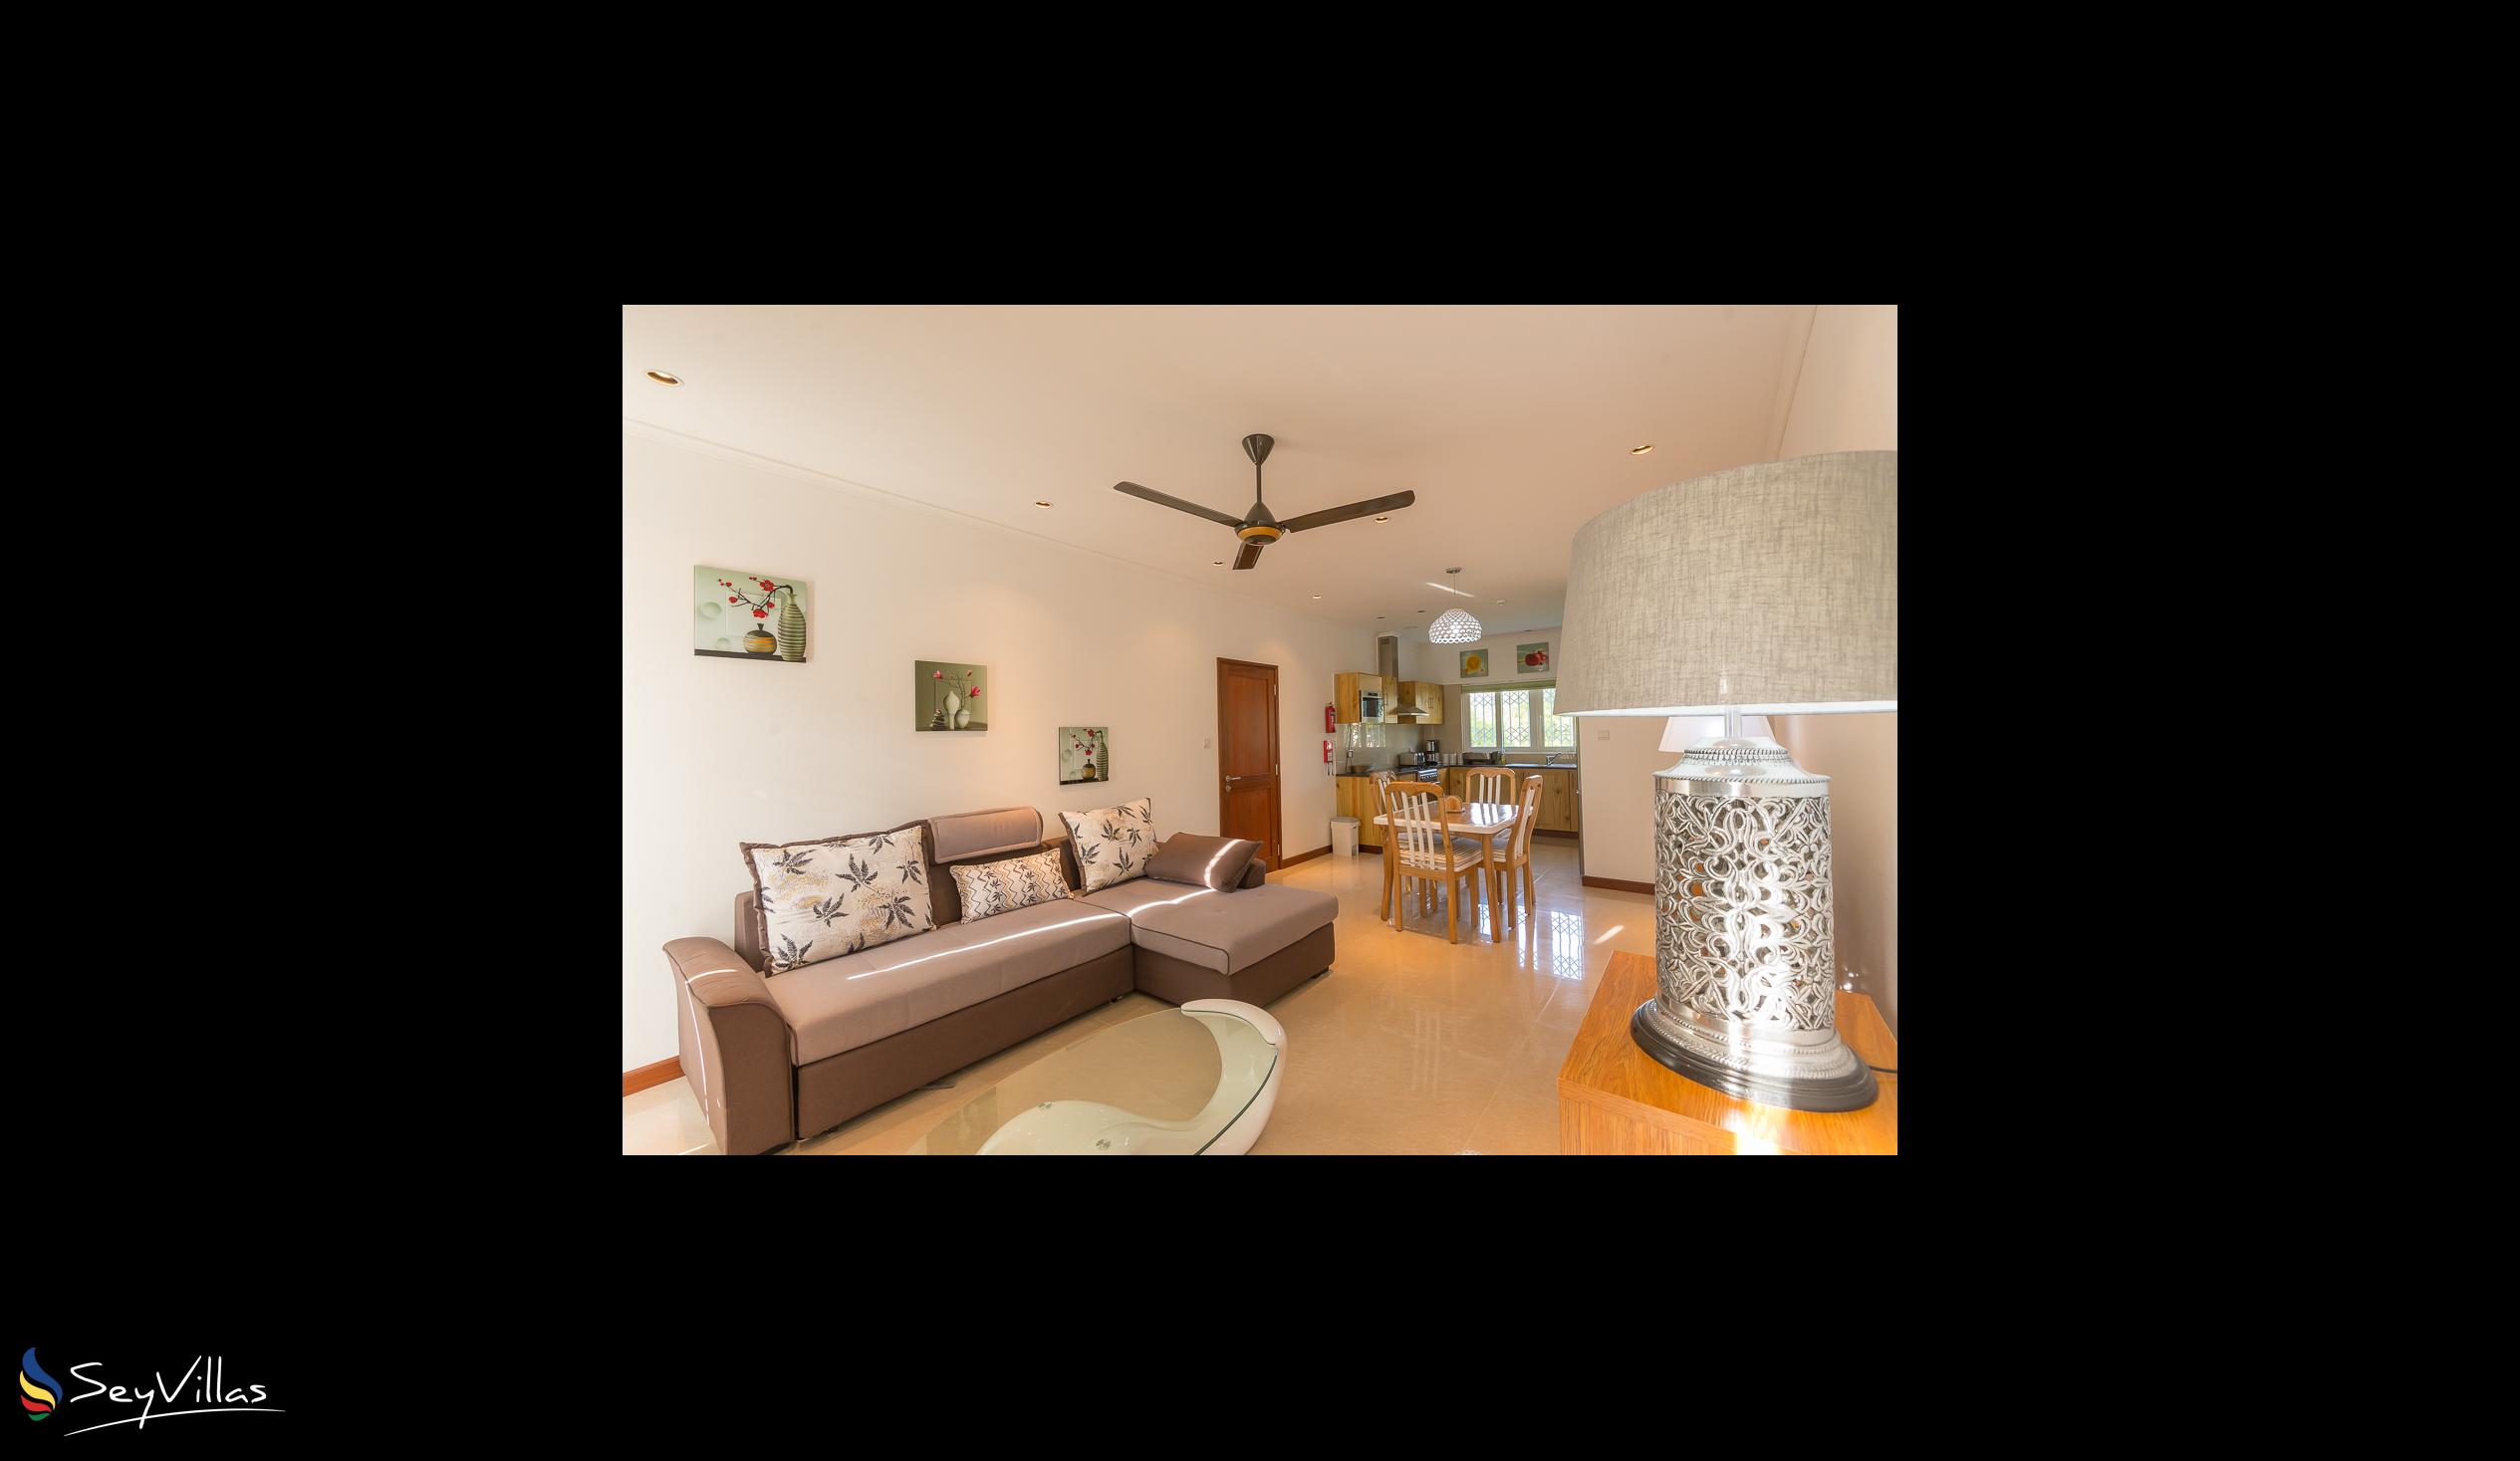 Foto 11: Tropic Villa Annex - Appartement pour adultes - Praslin (Seychelles)